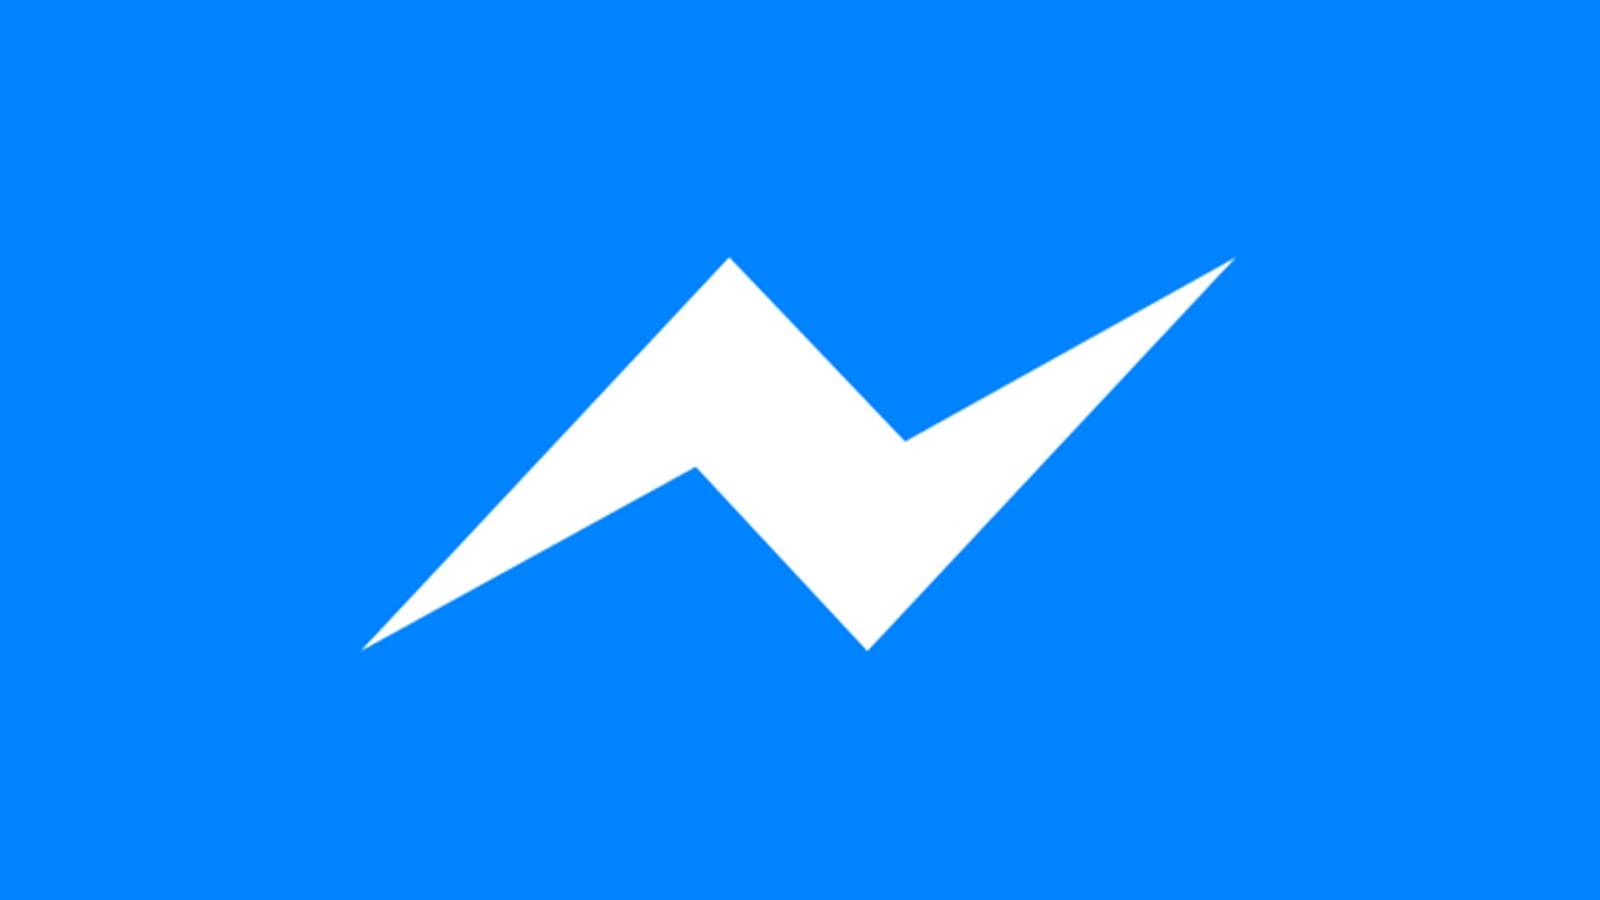 Facebook Messenger News med den släppta uppdateringen för telefoner och surfplattor